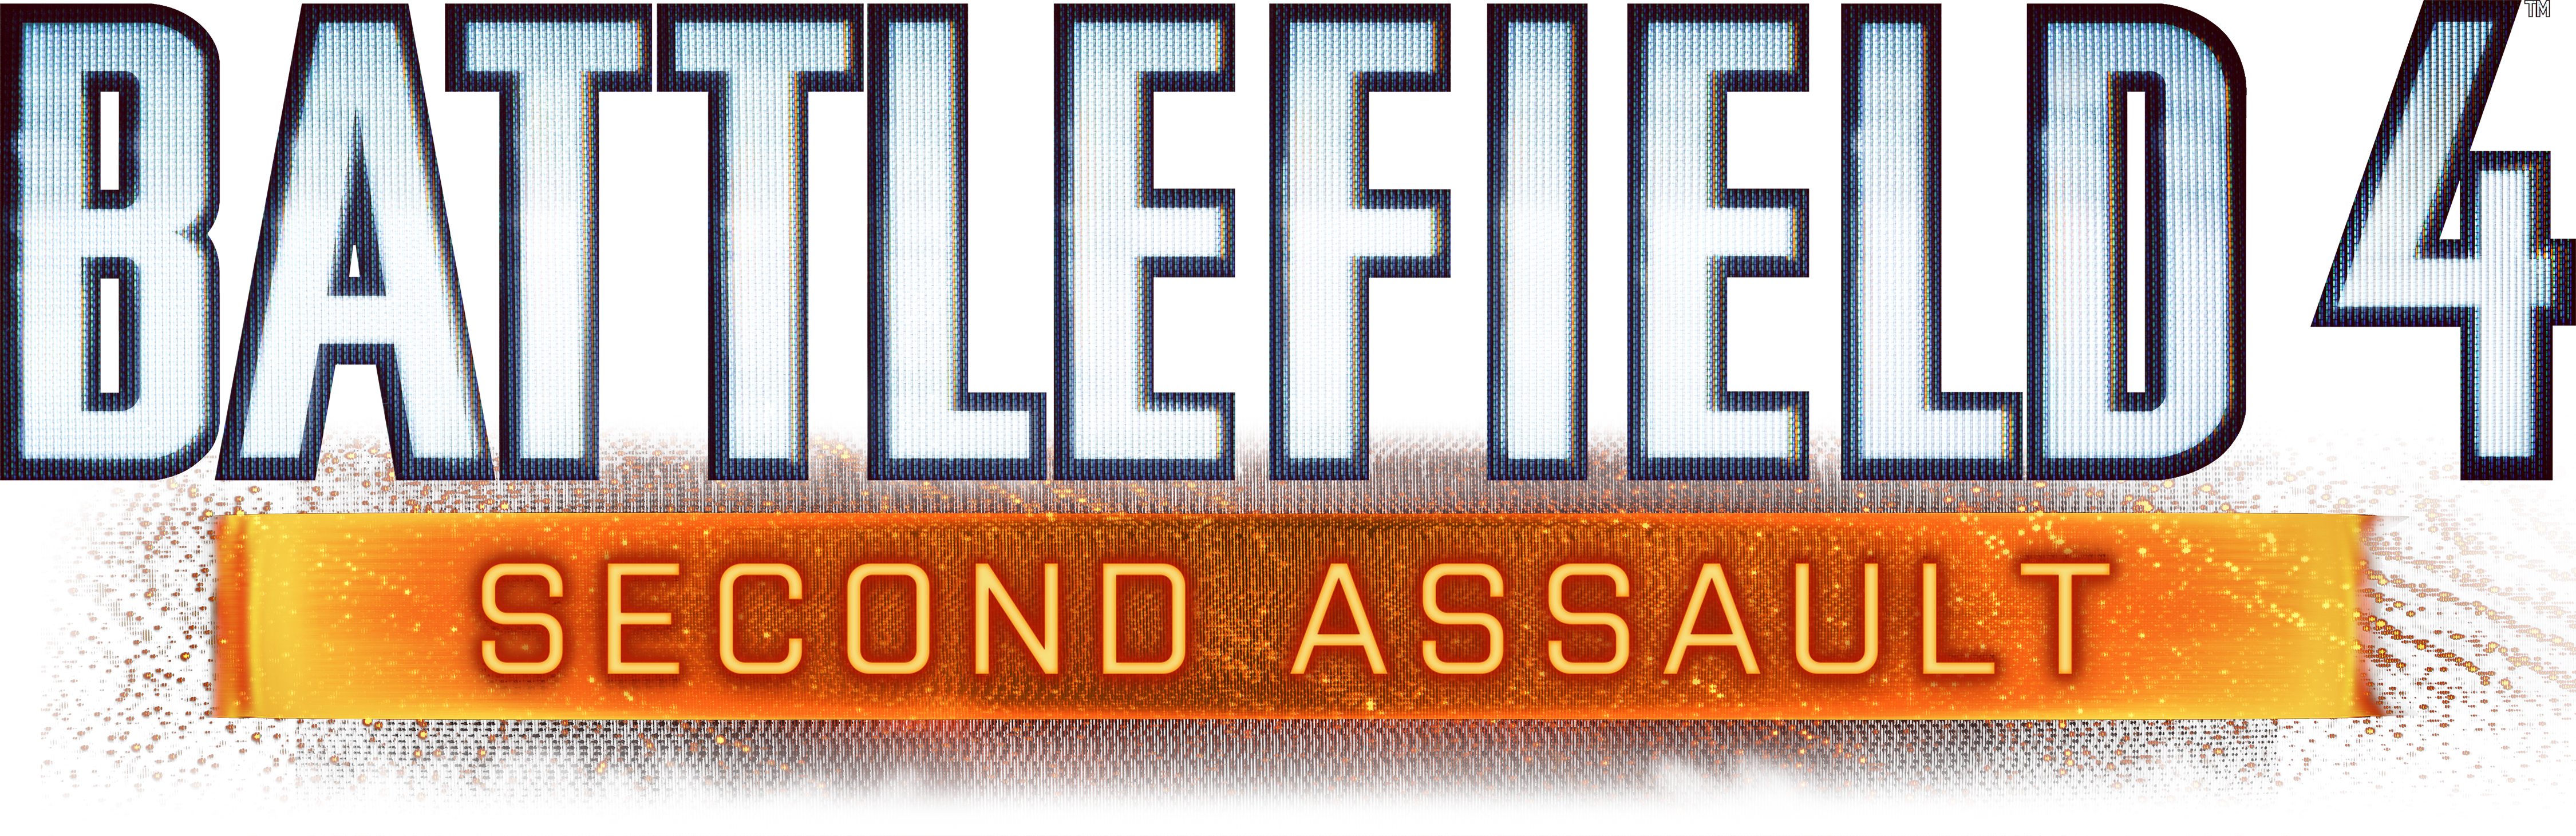 Battlefield 4 Second Assault - Battlefield 4 Second Png (4500x1461), Png Download